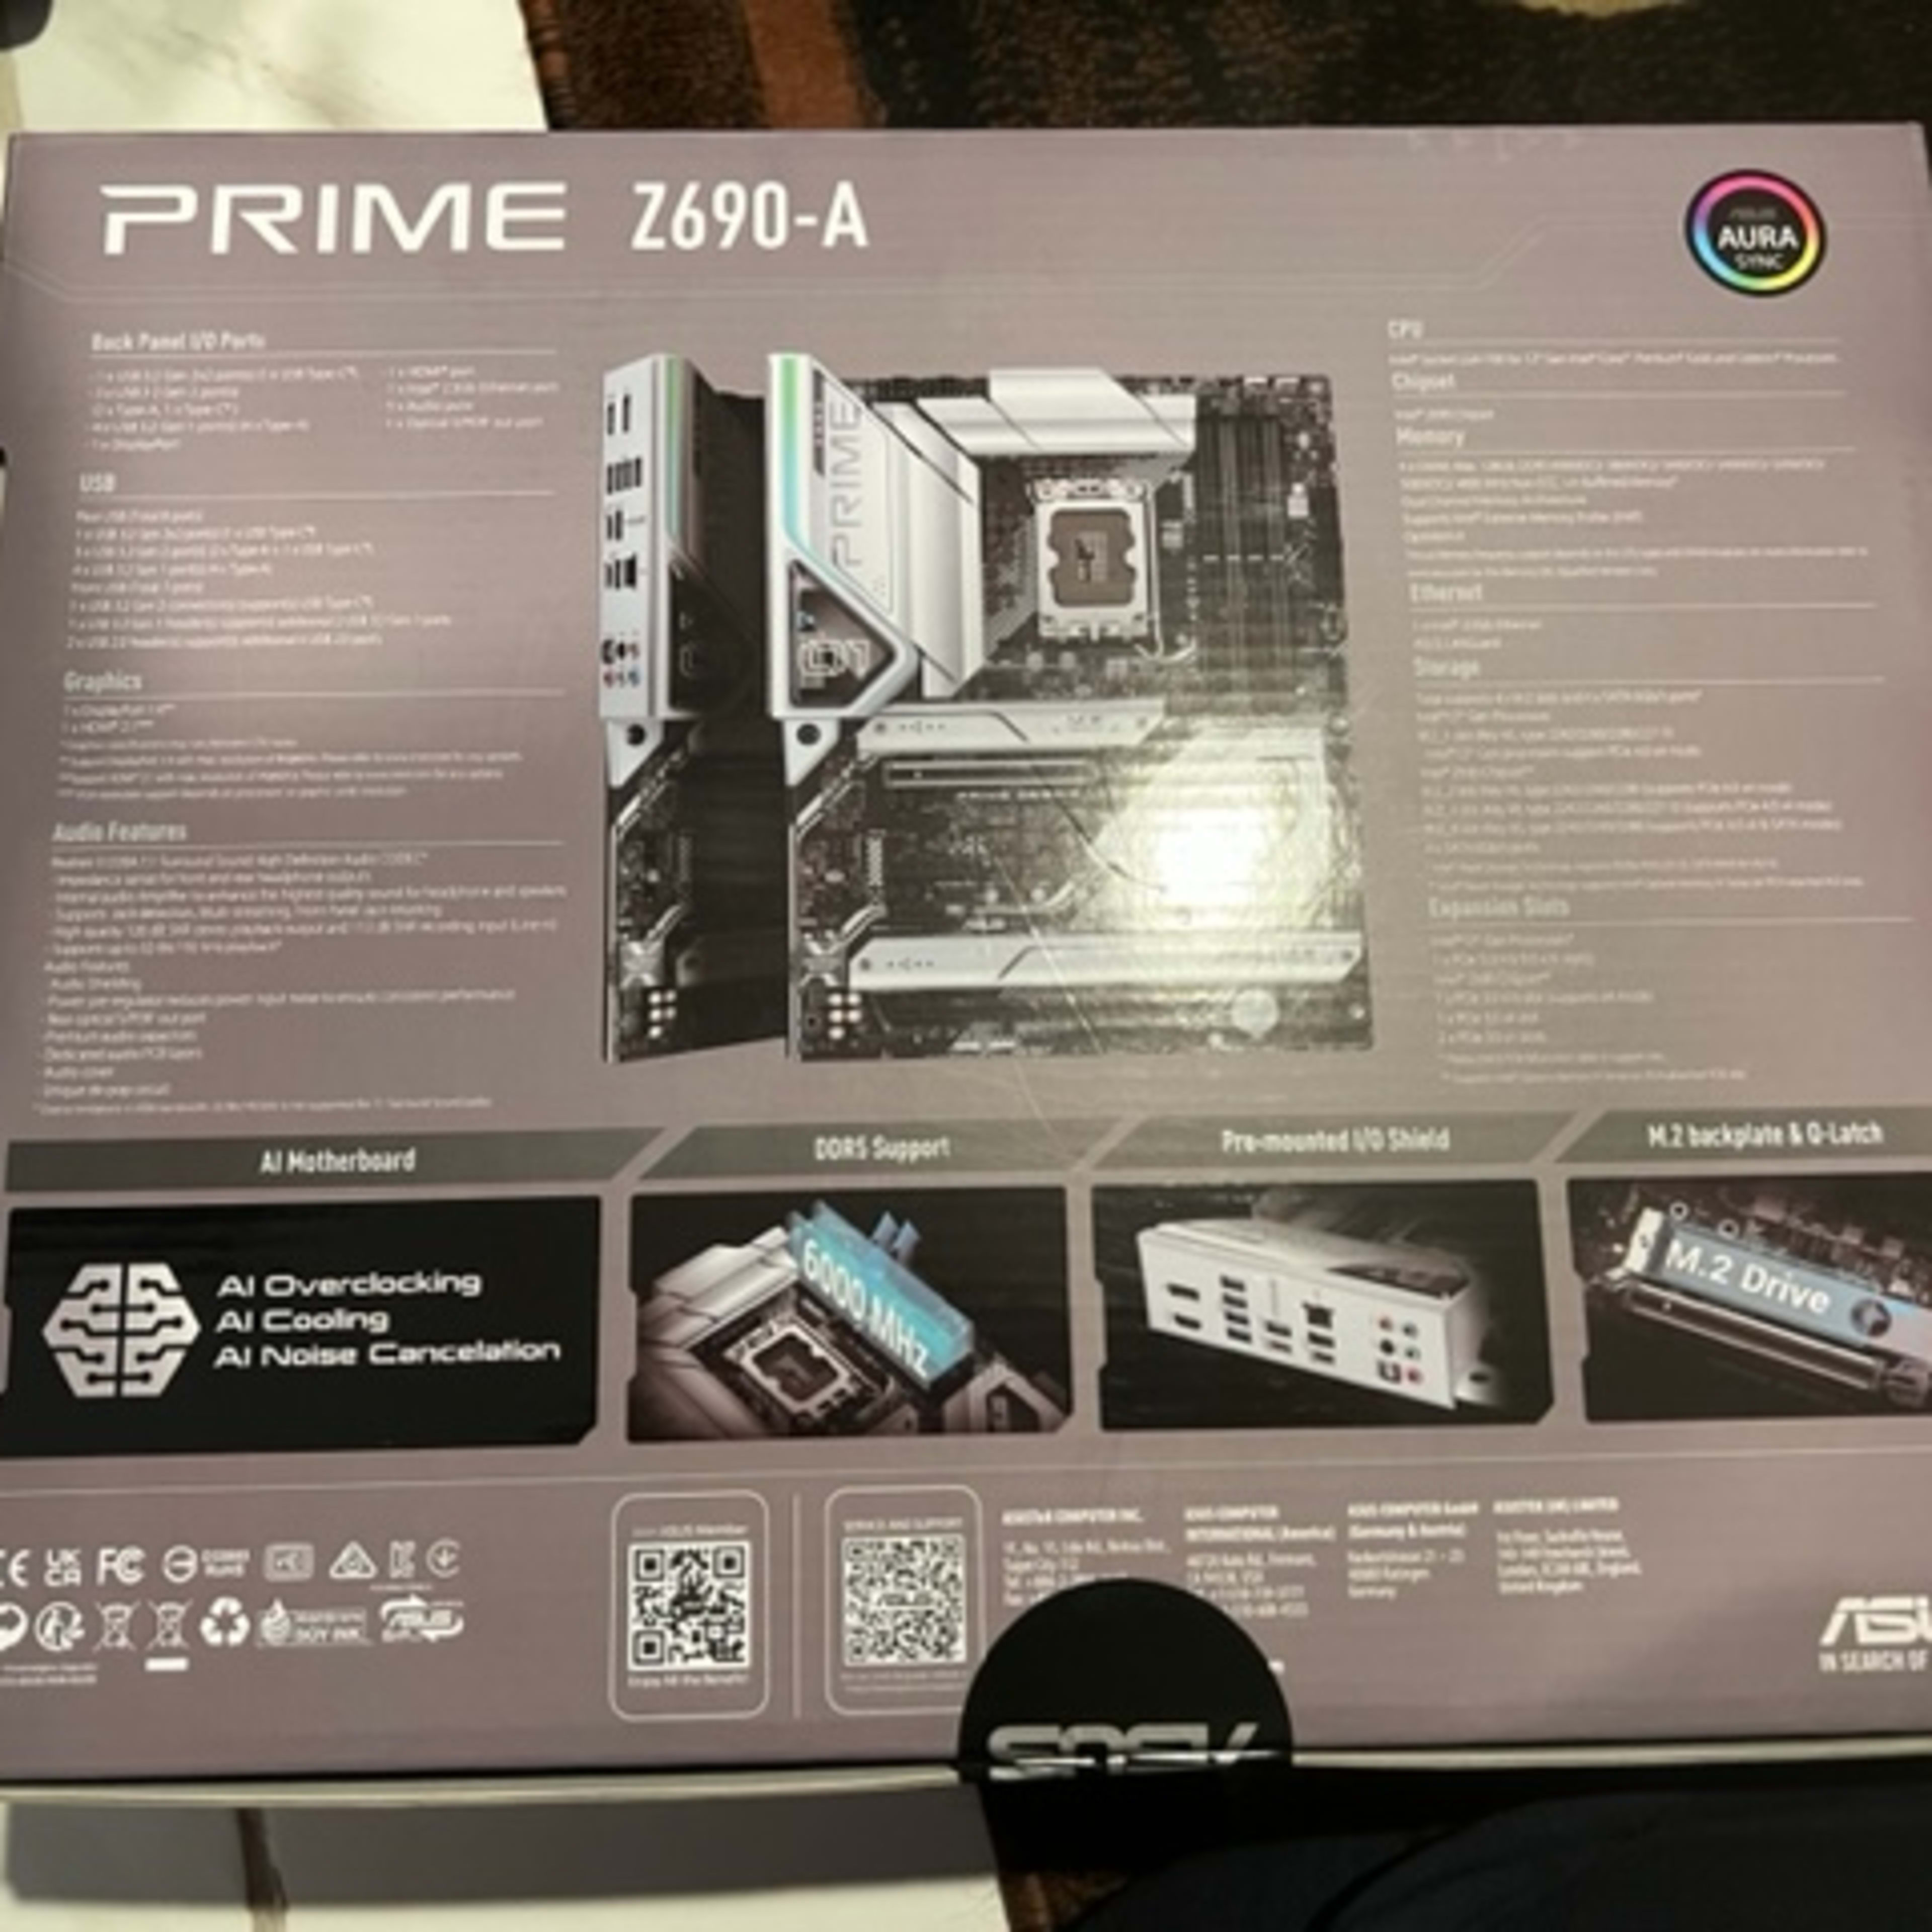 ASUS - PRIME Z690-A Intel Z690 LGA 1700 ATX